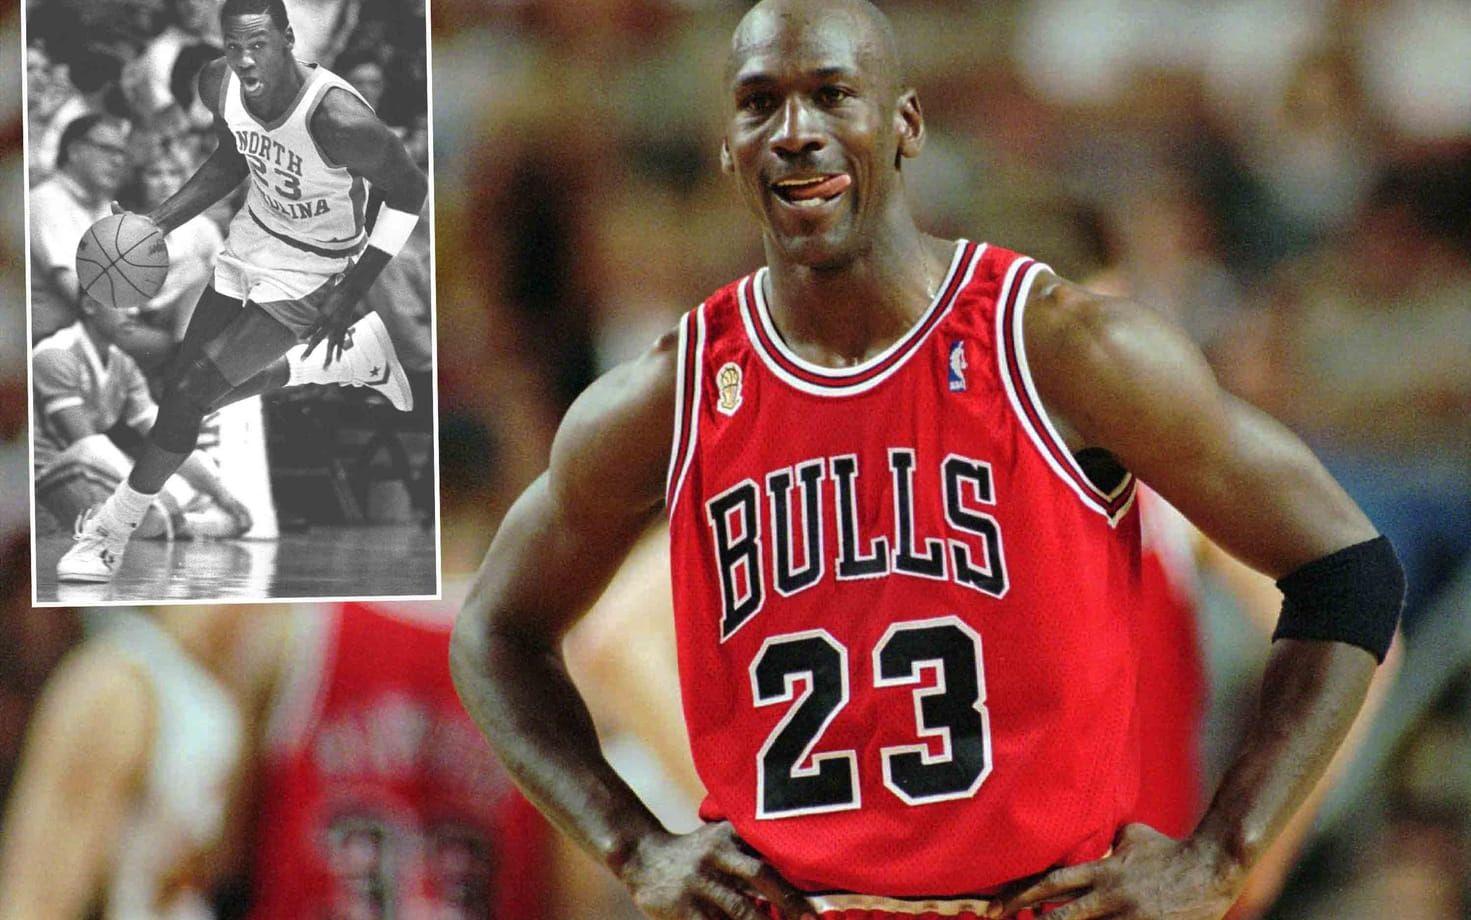 När Michael Jordan gjorde entre i NBA 1984 spelade han i längre shorts än de andra lirarna i ligan. Detta för att få plats med sina North Carolina-shorts, från collage, under dem han fick av Chicago Bulls. Jordan blev en trendsättare i NBA, och de stora shortsen blev snabbt populära bland ligans spelare. Foto: TT